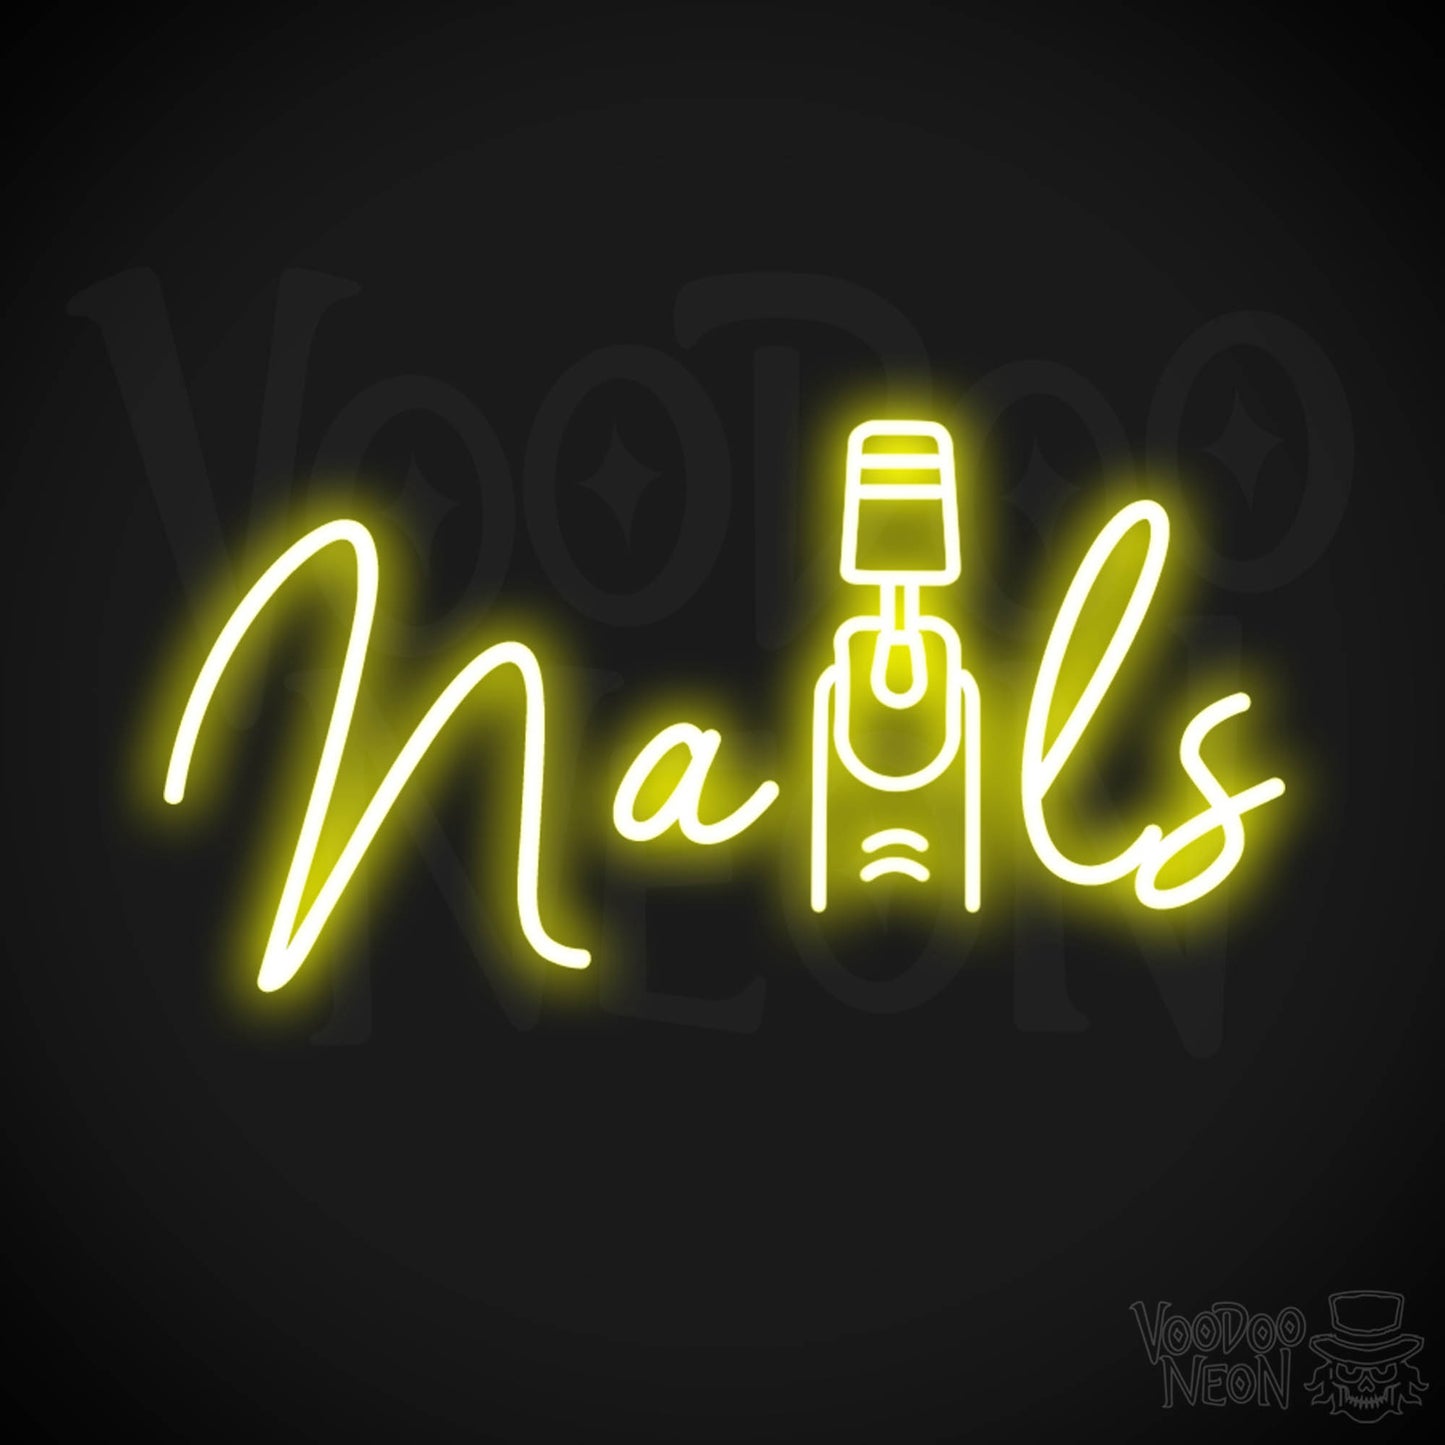 Nails Neon Sign - Nail Salon Sign - Neon Nails Sign - Nail Salon Wall Art - Color Yellow